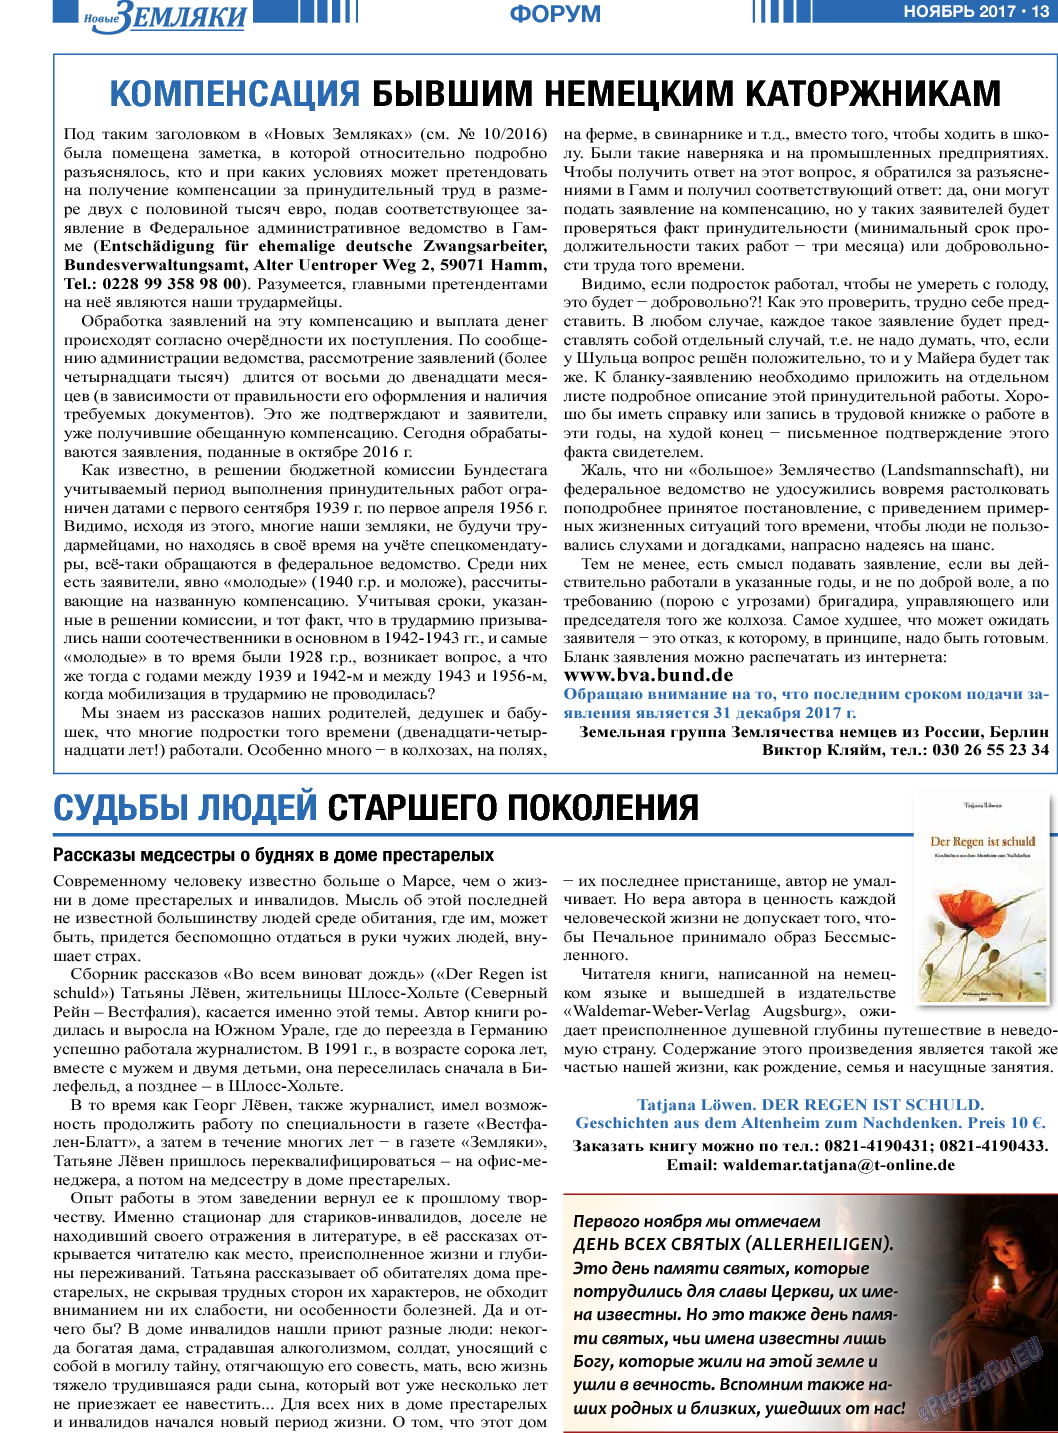 Новые Земляки, газета. 2017 №11 стр.13